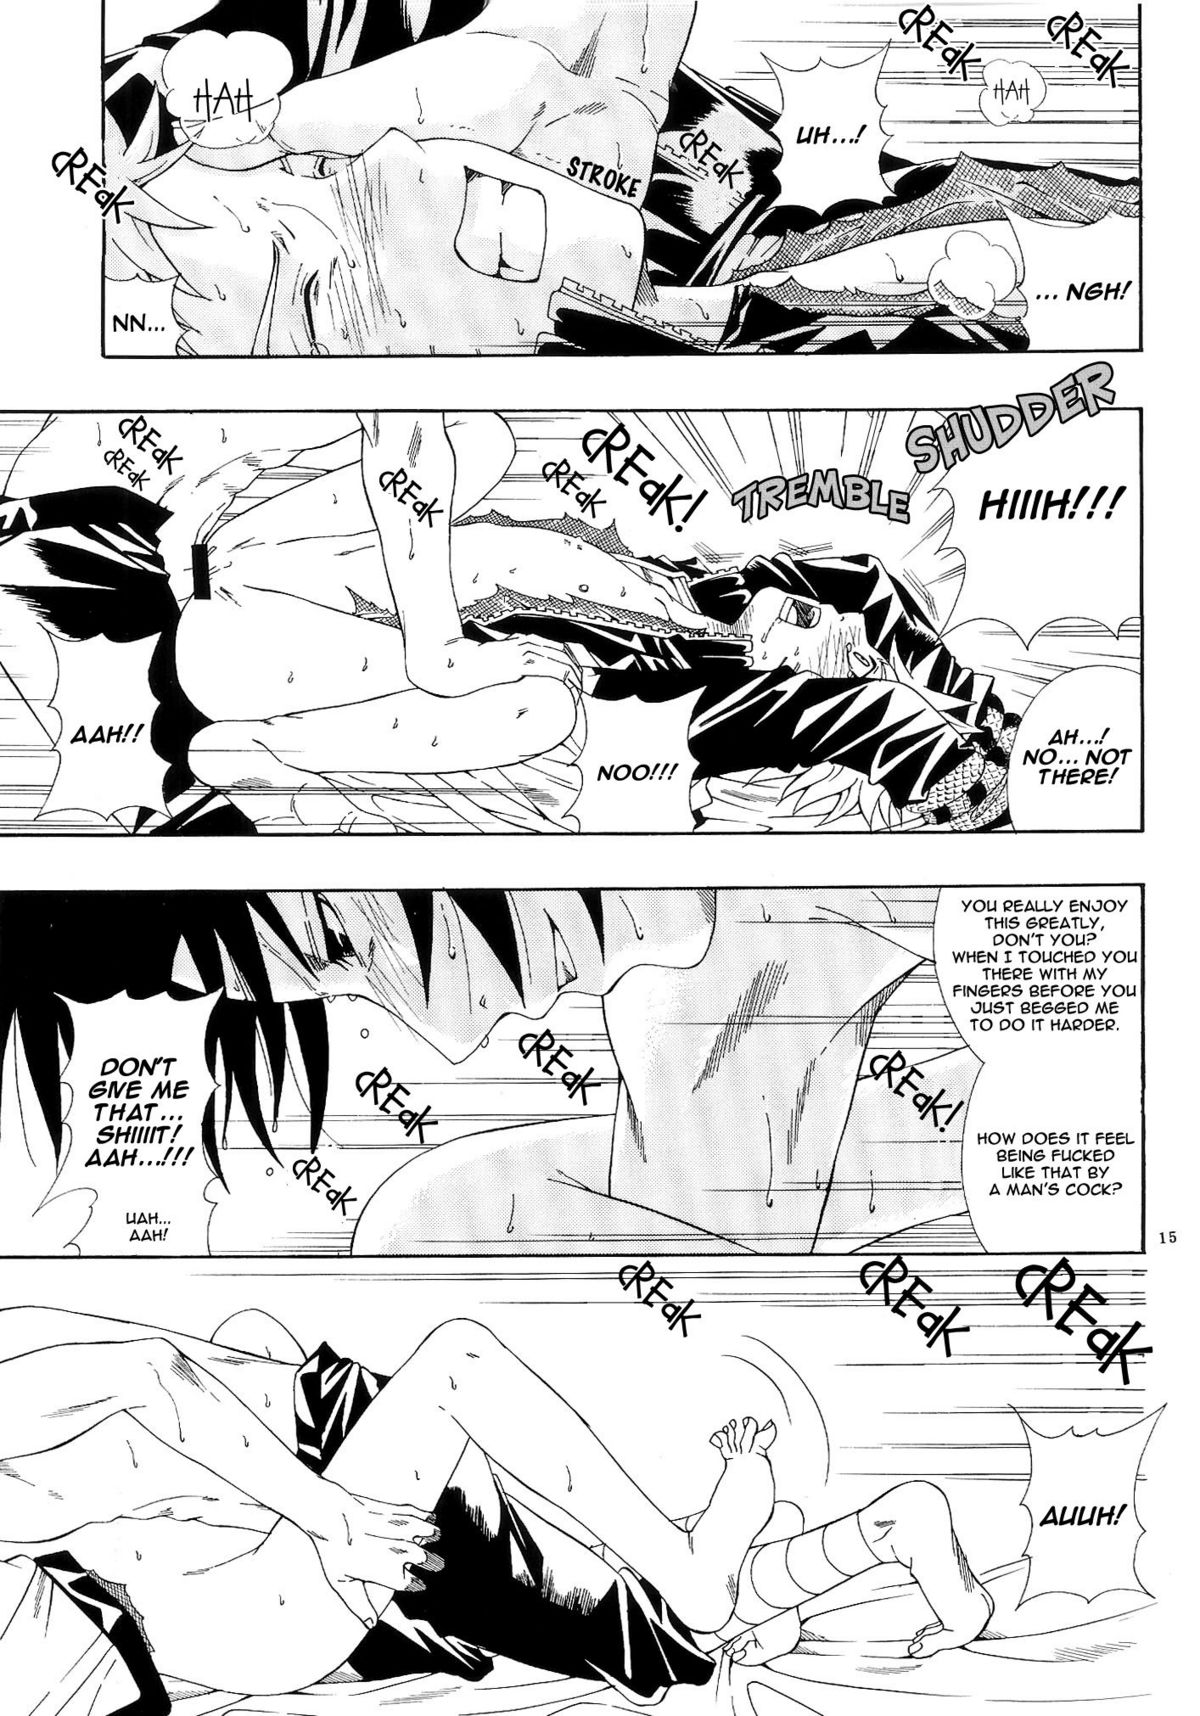 ERO ERO&sup2;: Volume 1.5  (NARUTO) [Sasuke X Naruto] YAOI -ENG- 